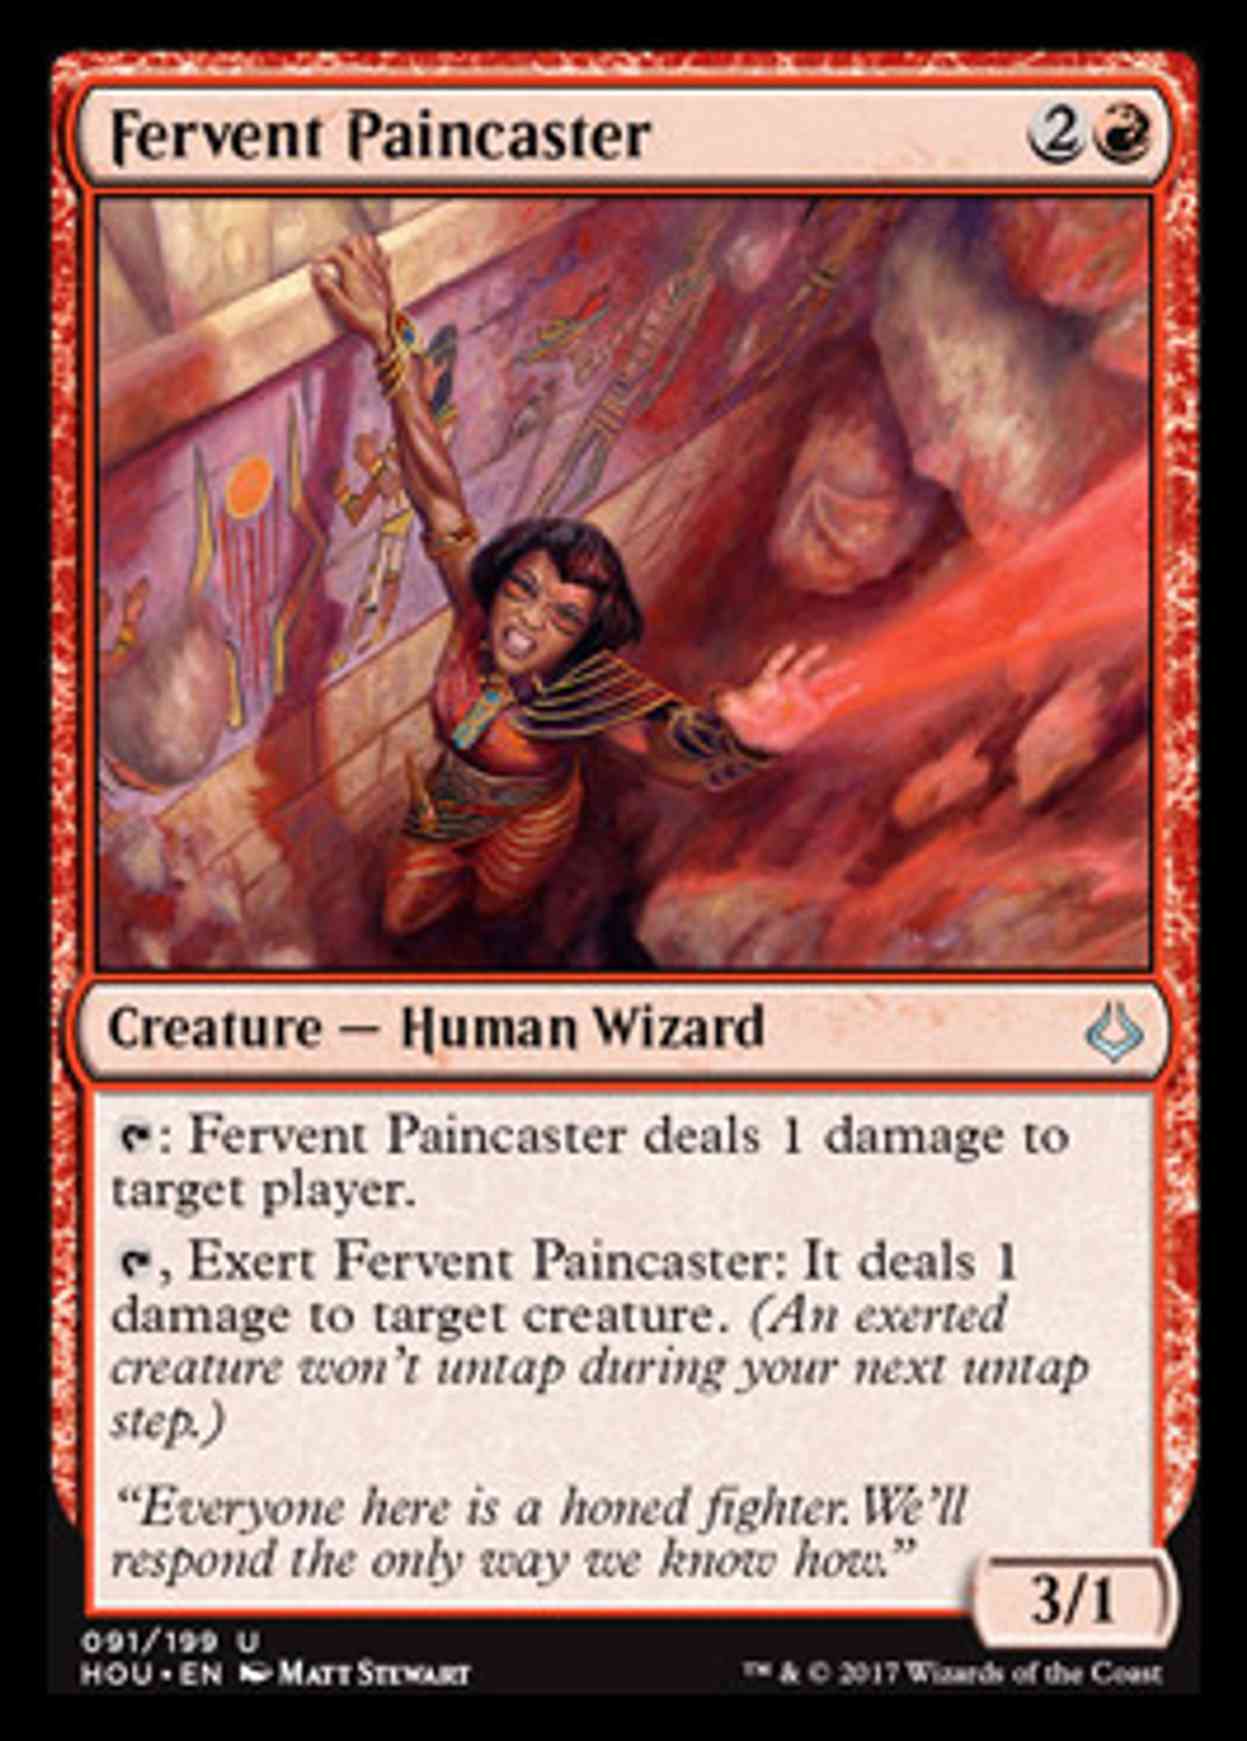 Fervent Paincaster magic card front